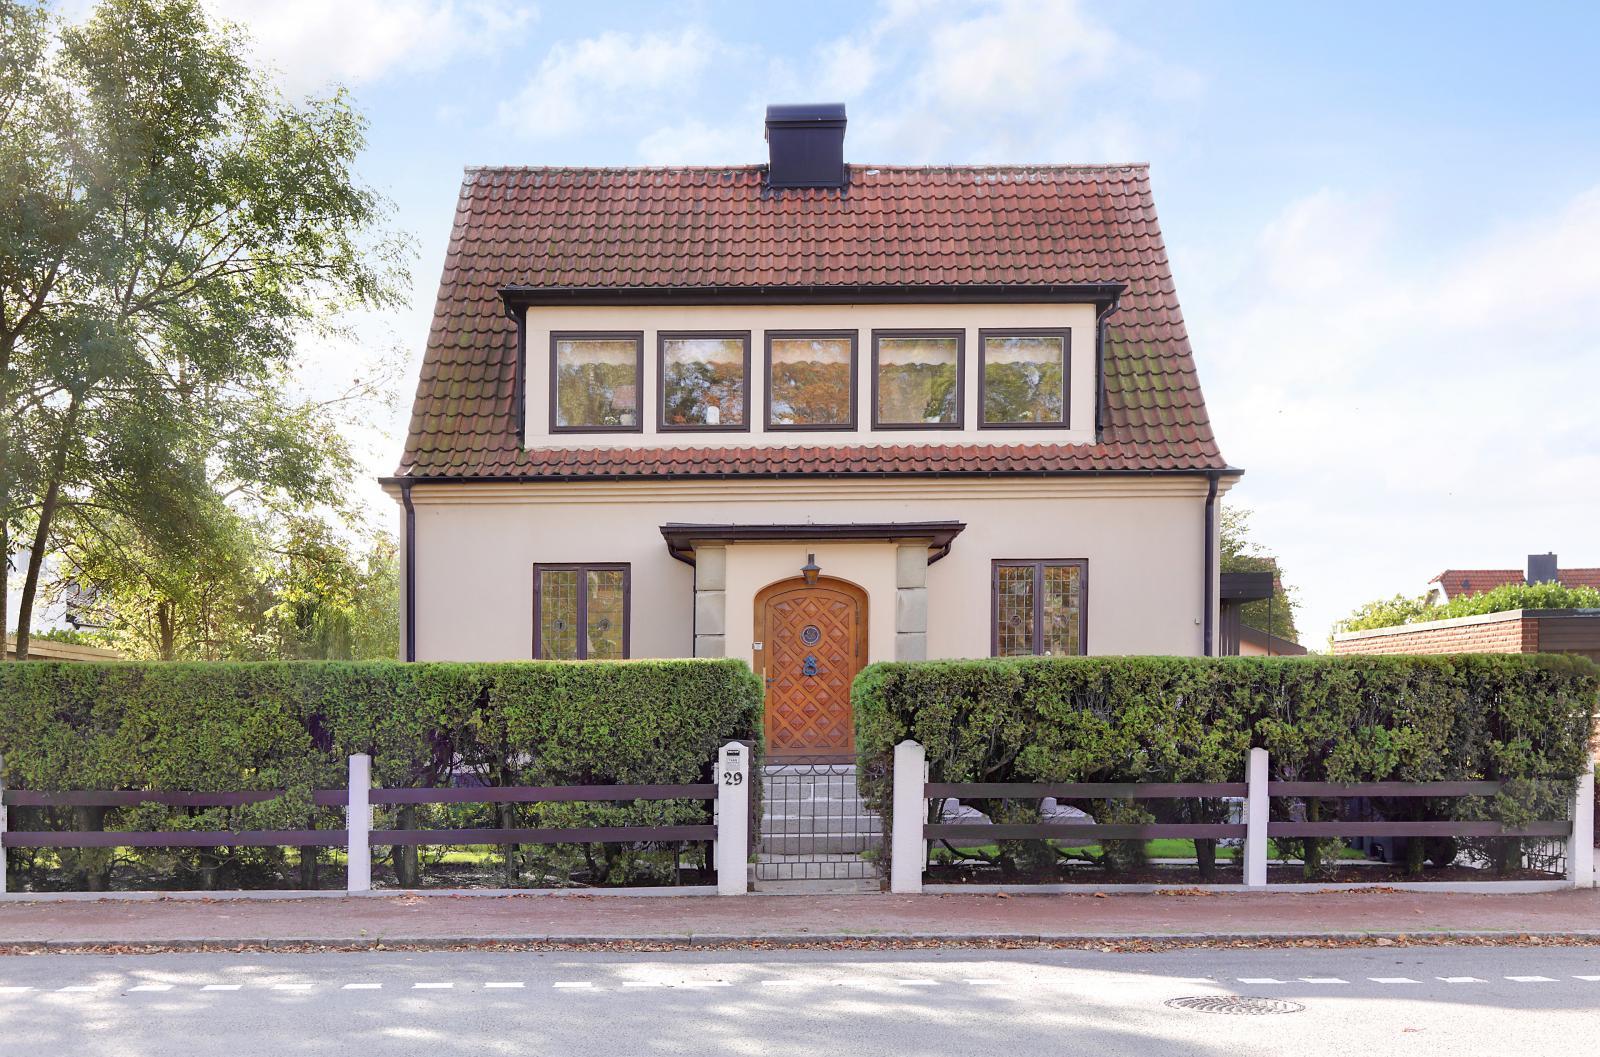 Denna villa med stor trädgård i Limhamn är den näst mest klickade på Hemnet i Malmö vecka 42.